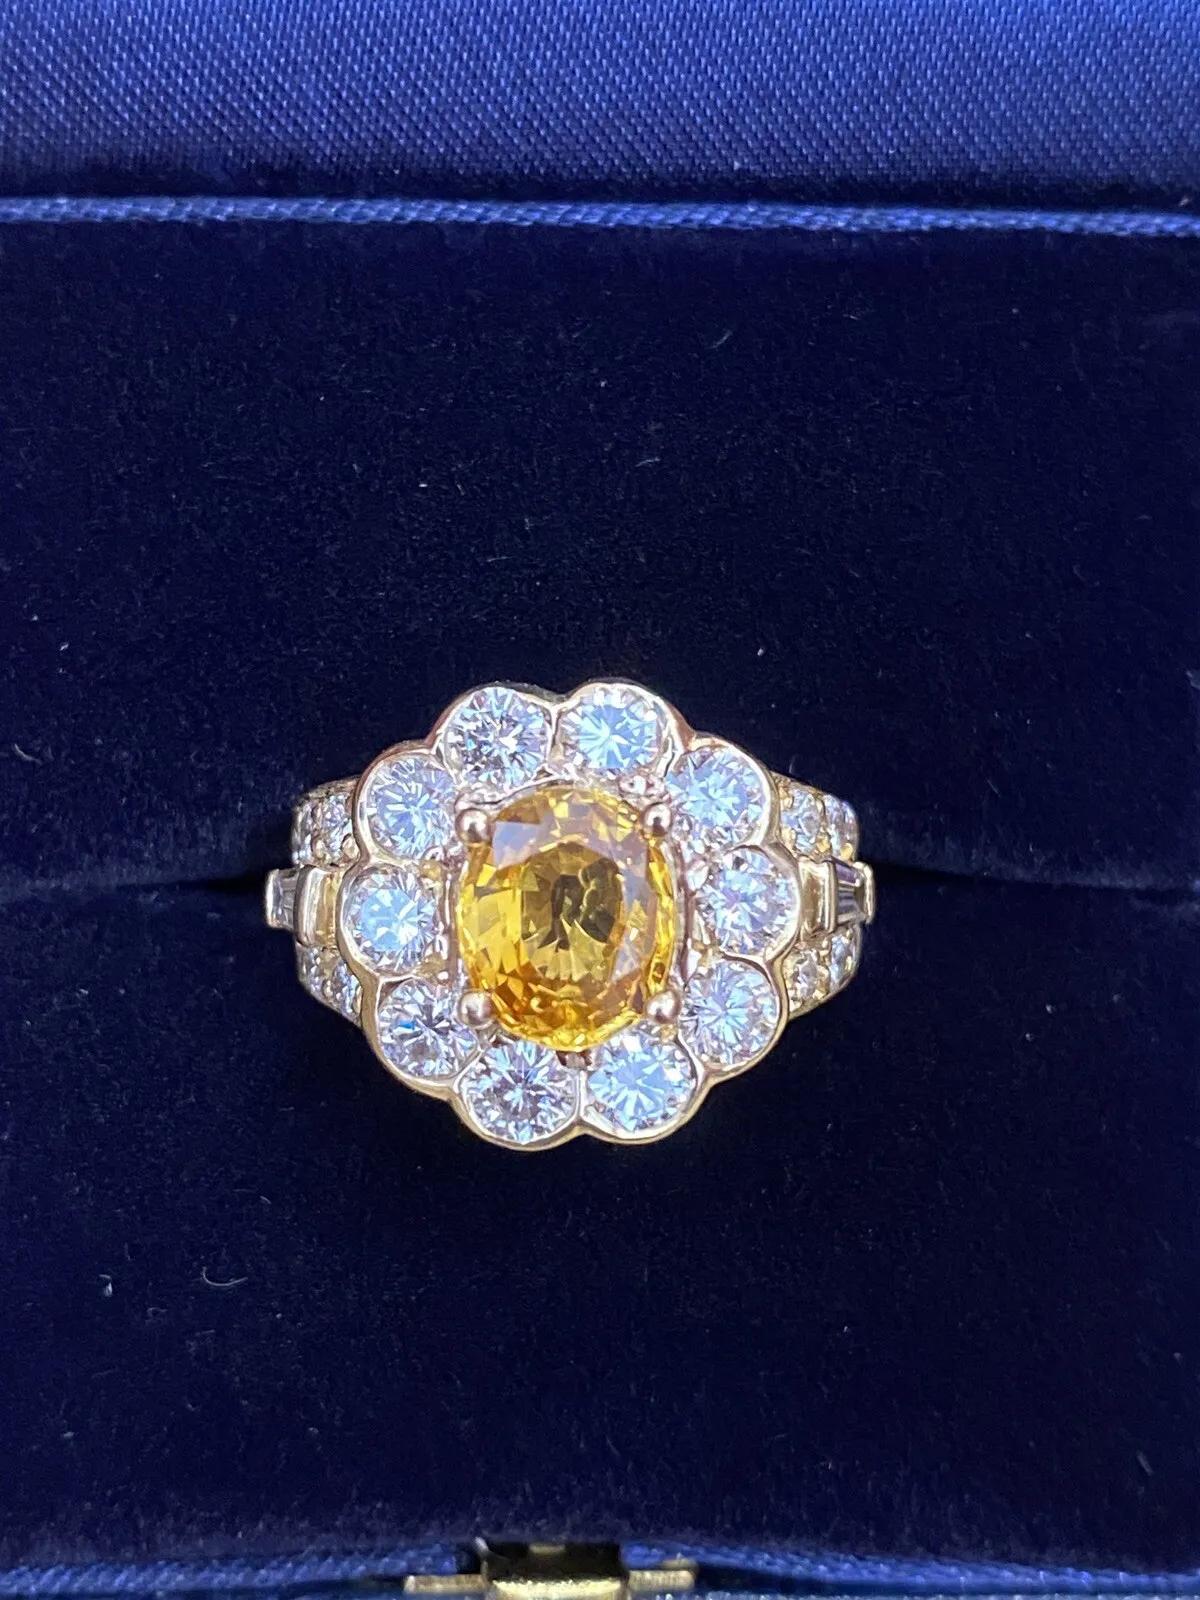 JB STAR Gelber Saphir & Diamant Ring aus 18k Gelbgold

Gelber Saphir und Diamant Ring verfügt über eine ovale Lebendige Vibrant Gelber Saphir in der Mitte von runden Brillanten und Baguette Diamanten Lünette, Zacken & Pavè in 18k Gelbgold gesetzt